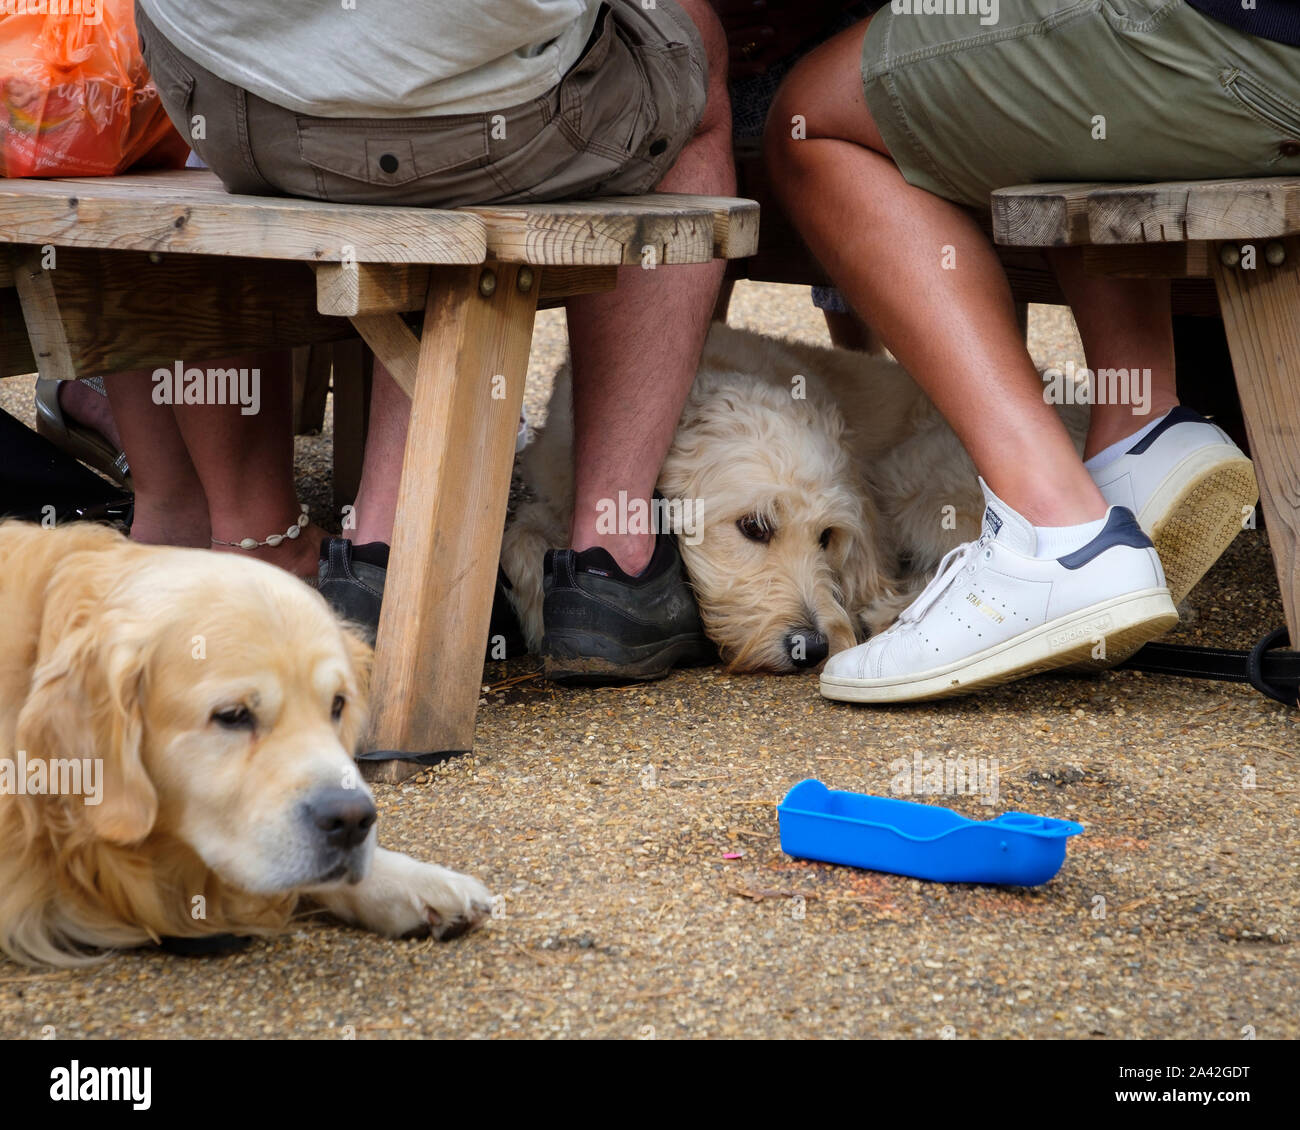 Hunde geduldig warten, während ihre Besitzer Essen und Trinken  Stockfotografie - Alamy